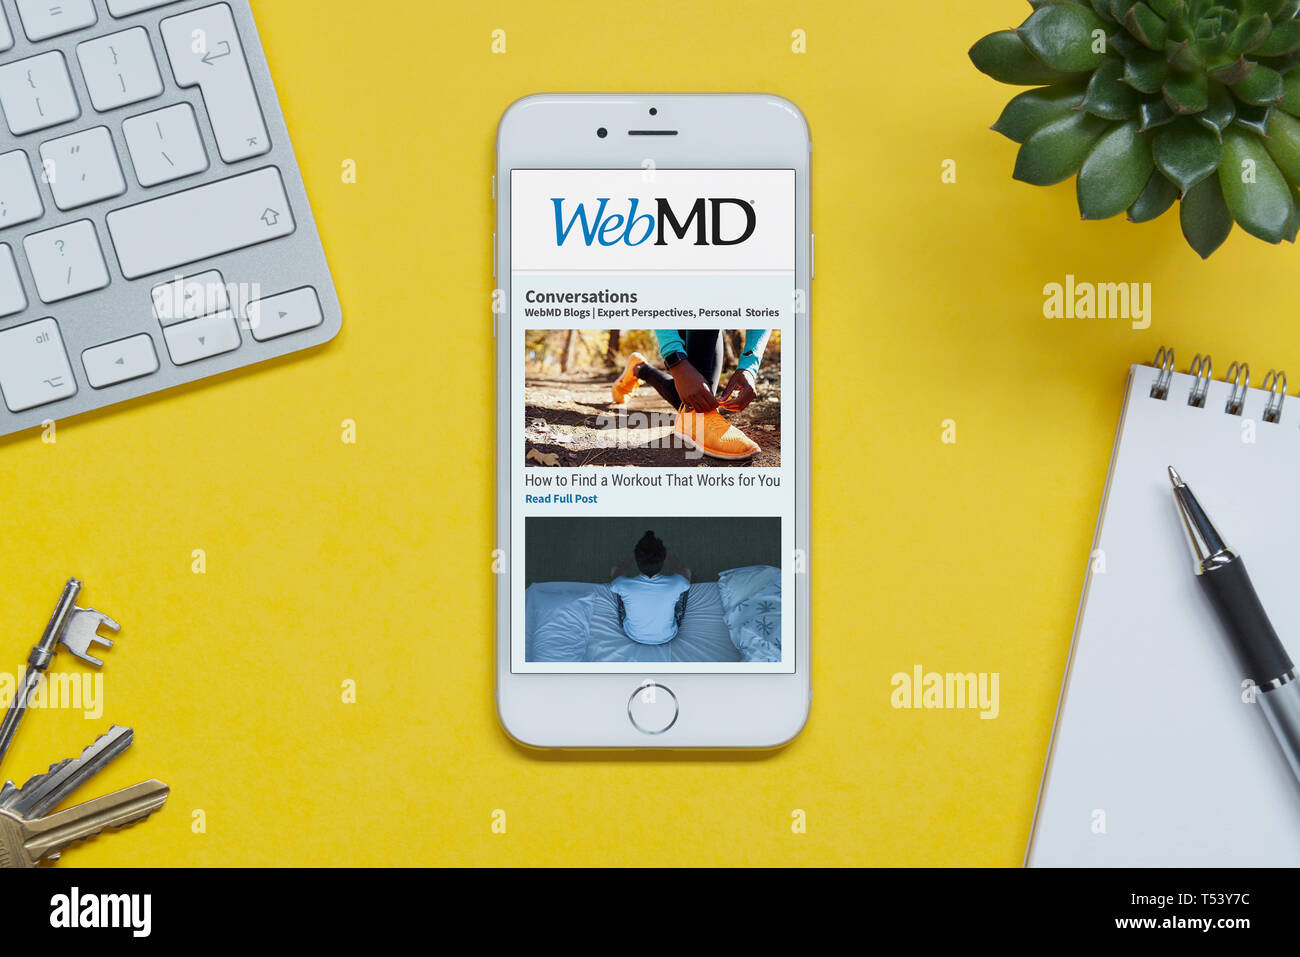 Ein iPhone zeigt die WebMD website ruht auf einem gelben Hintergrund Tabelle mit einer Tastatur, Tasten, Notepad und Anlage (nur redaktionelle Nutzung). Stockfoto